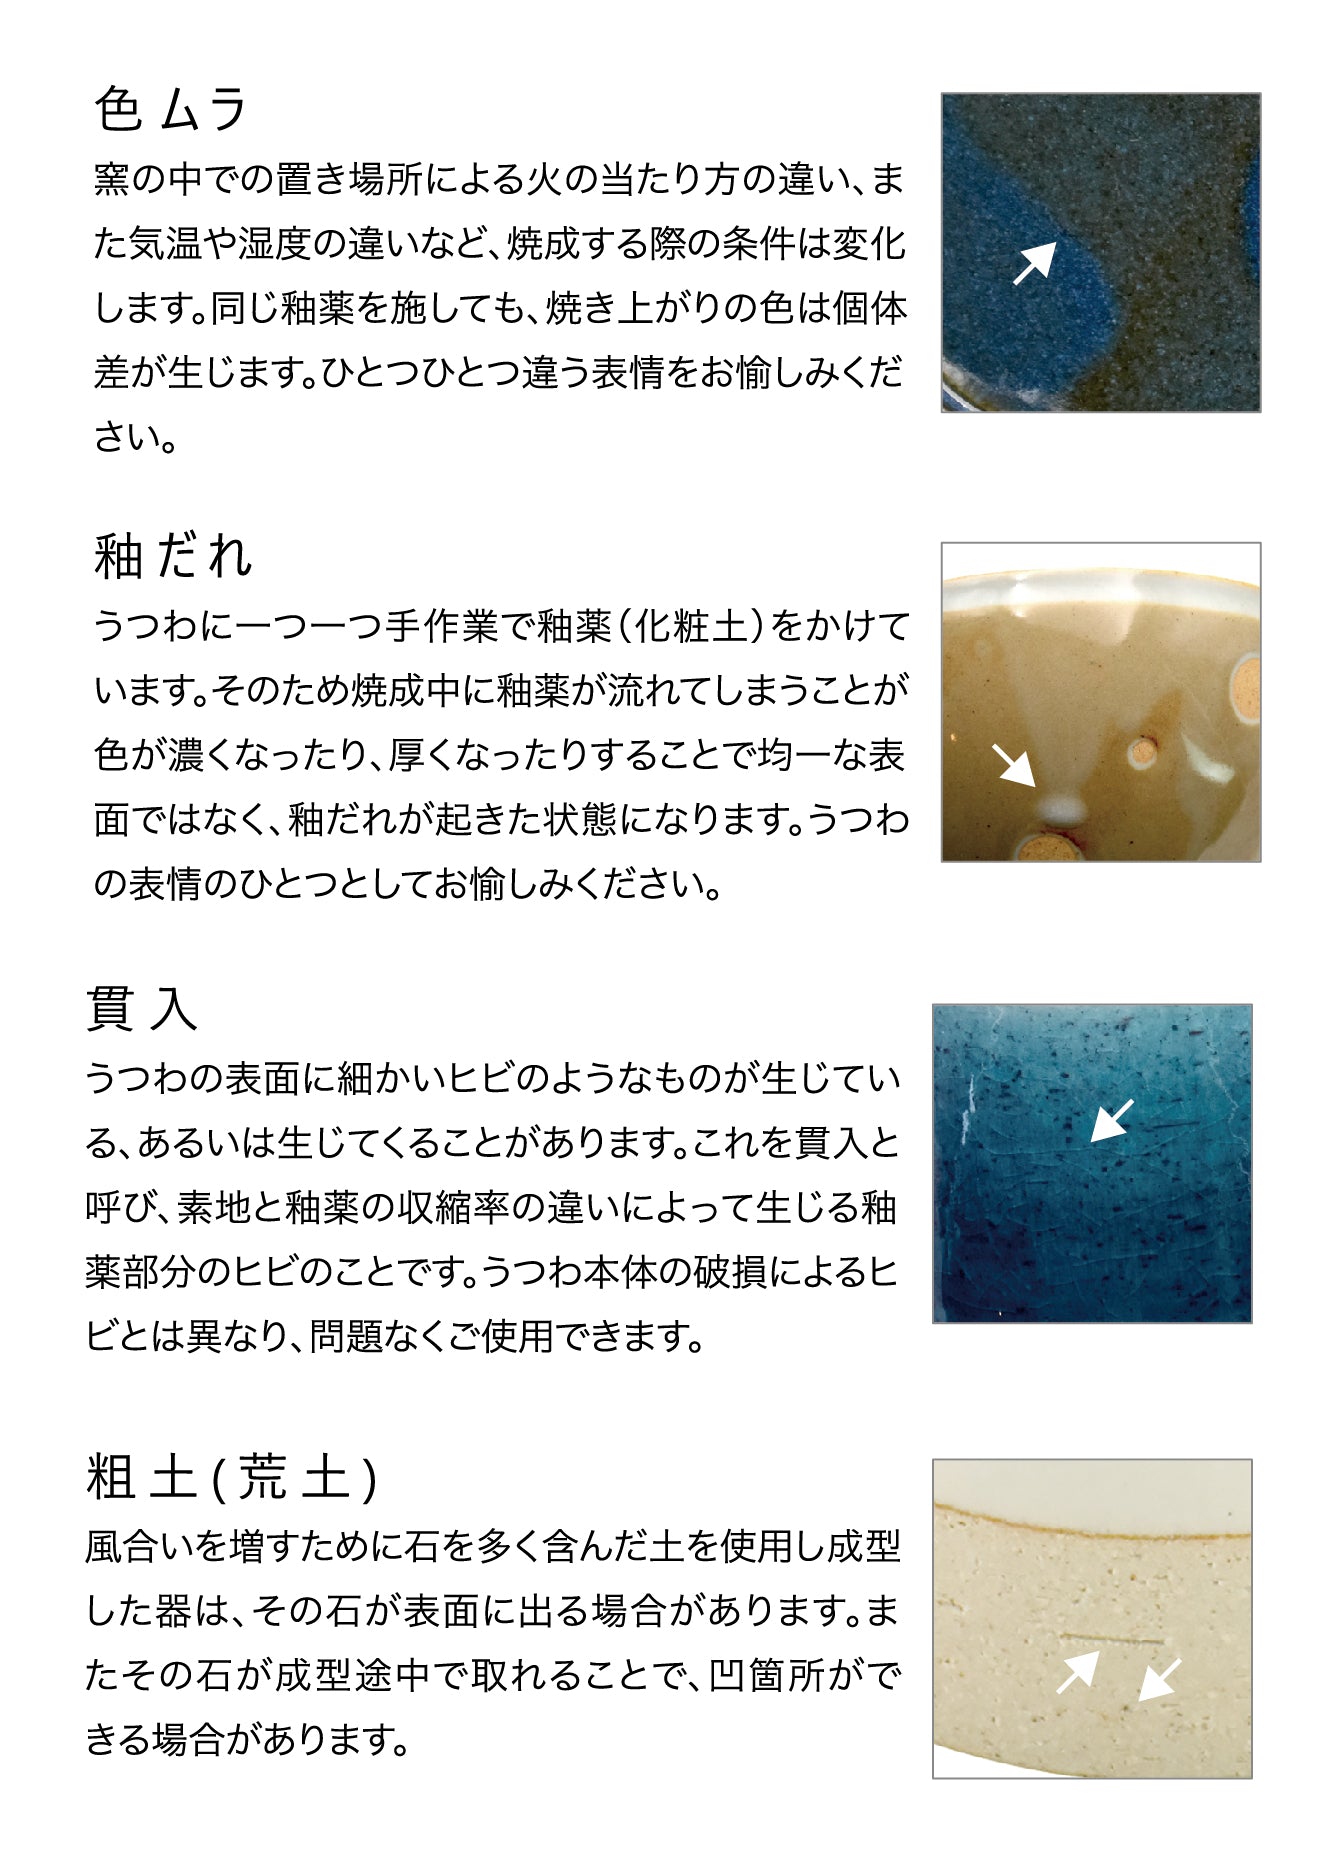 YUKURI Book cafe Bowl Kiln Change Gray (08298)